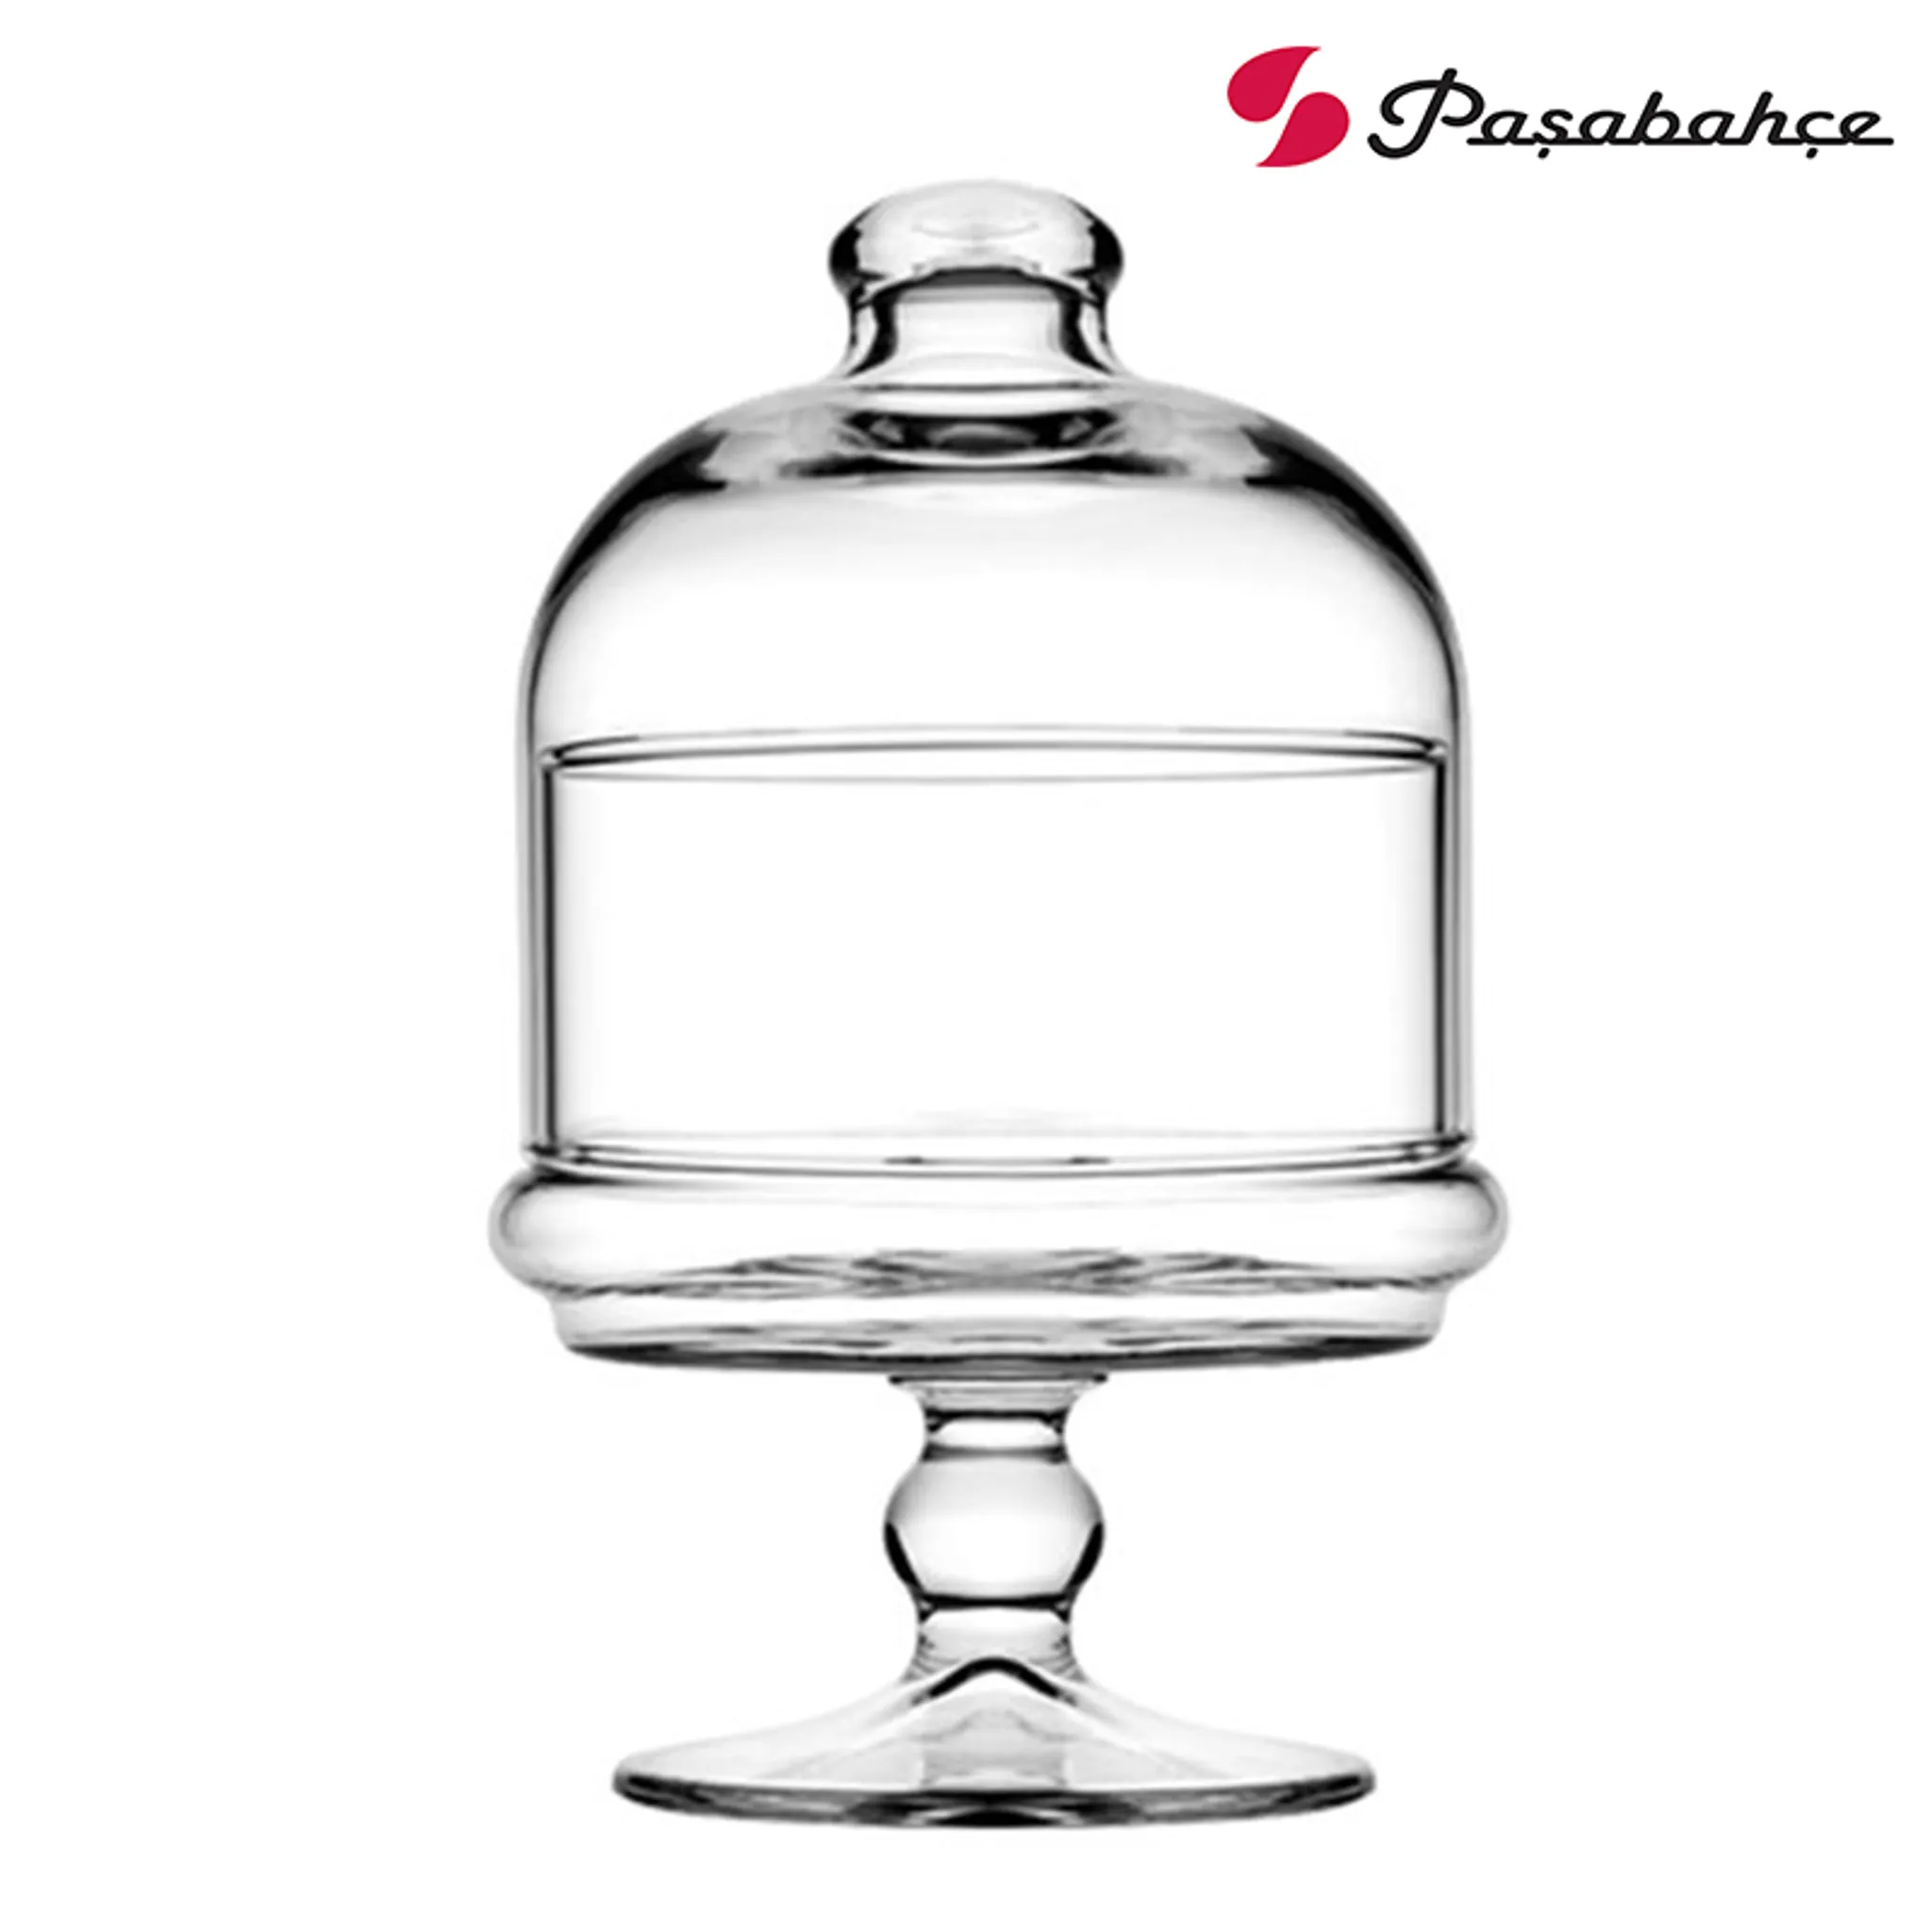 Pasabahce 96386 Mini Patisserie mit Haube, Höhe ca. 19 cm, aus Glas :  : Küche, Haushalt & Wohnen